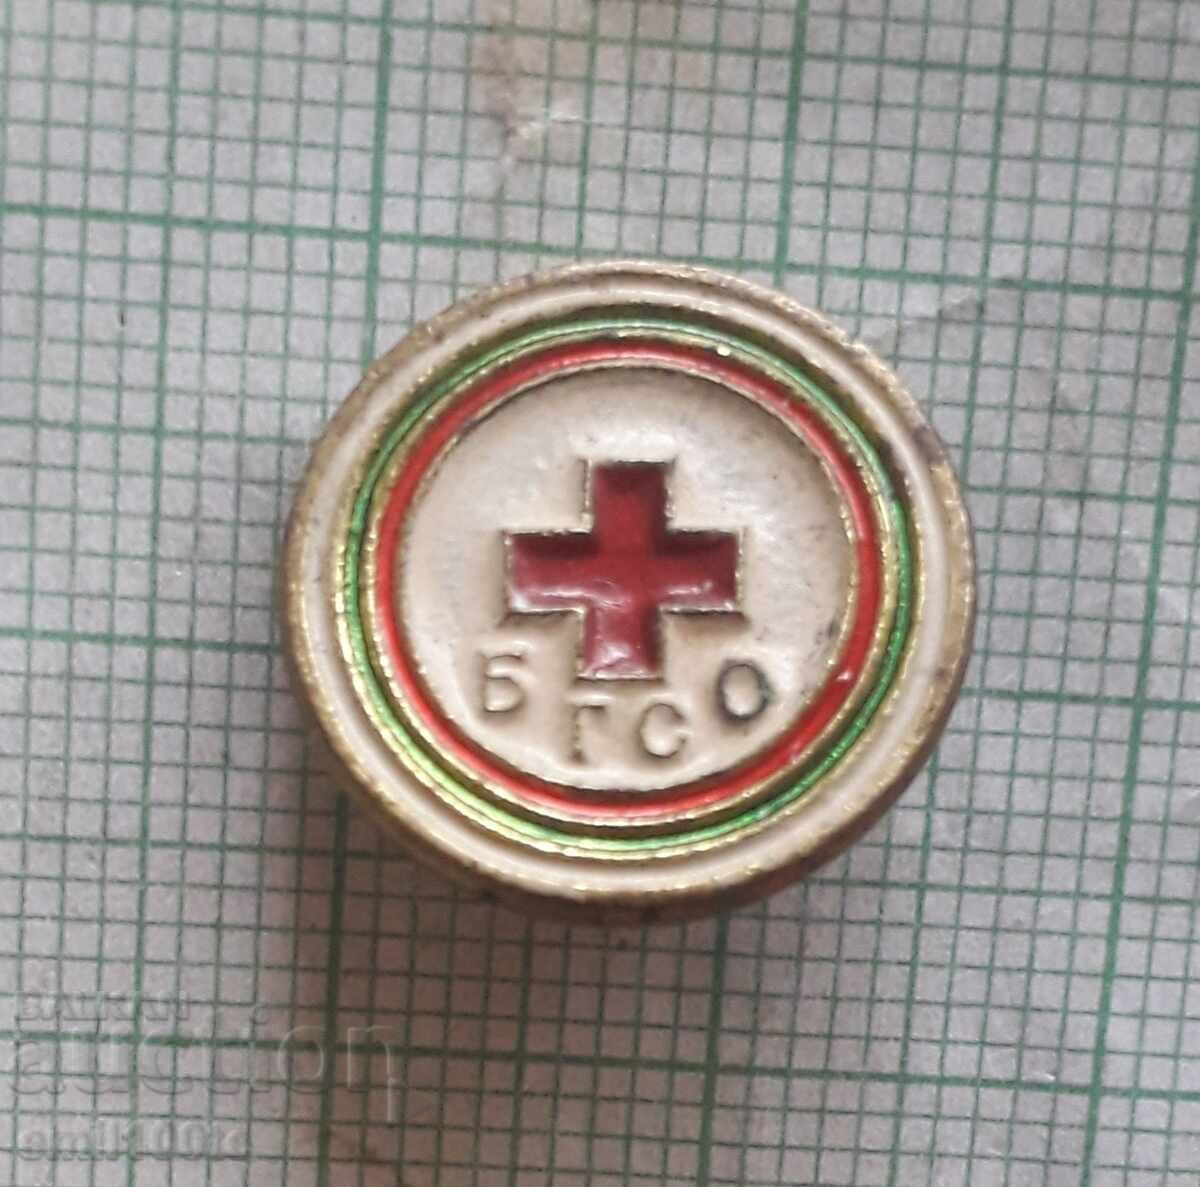 Σήμα - BGSO Ερυθρός Σταυρός Να είστε έτοιμοι για υγειονομική άμυνα